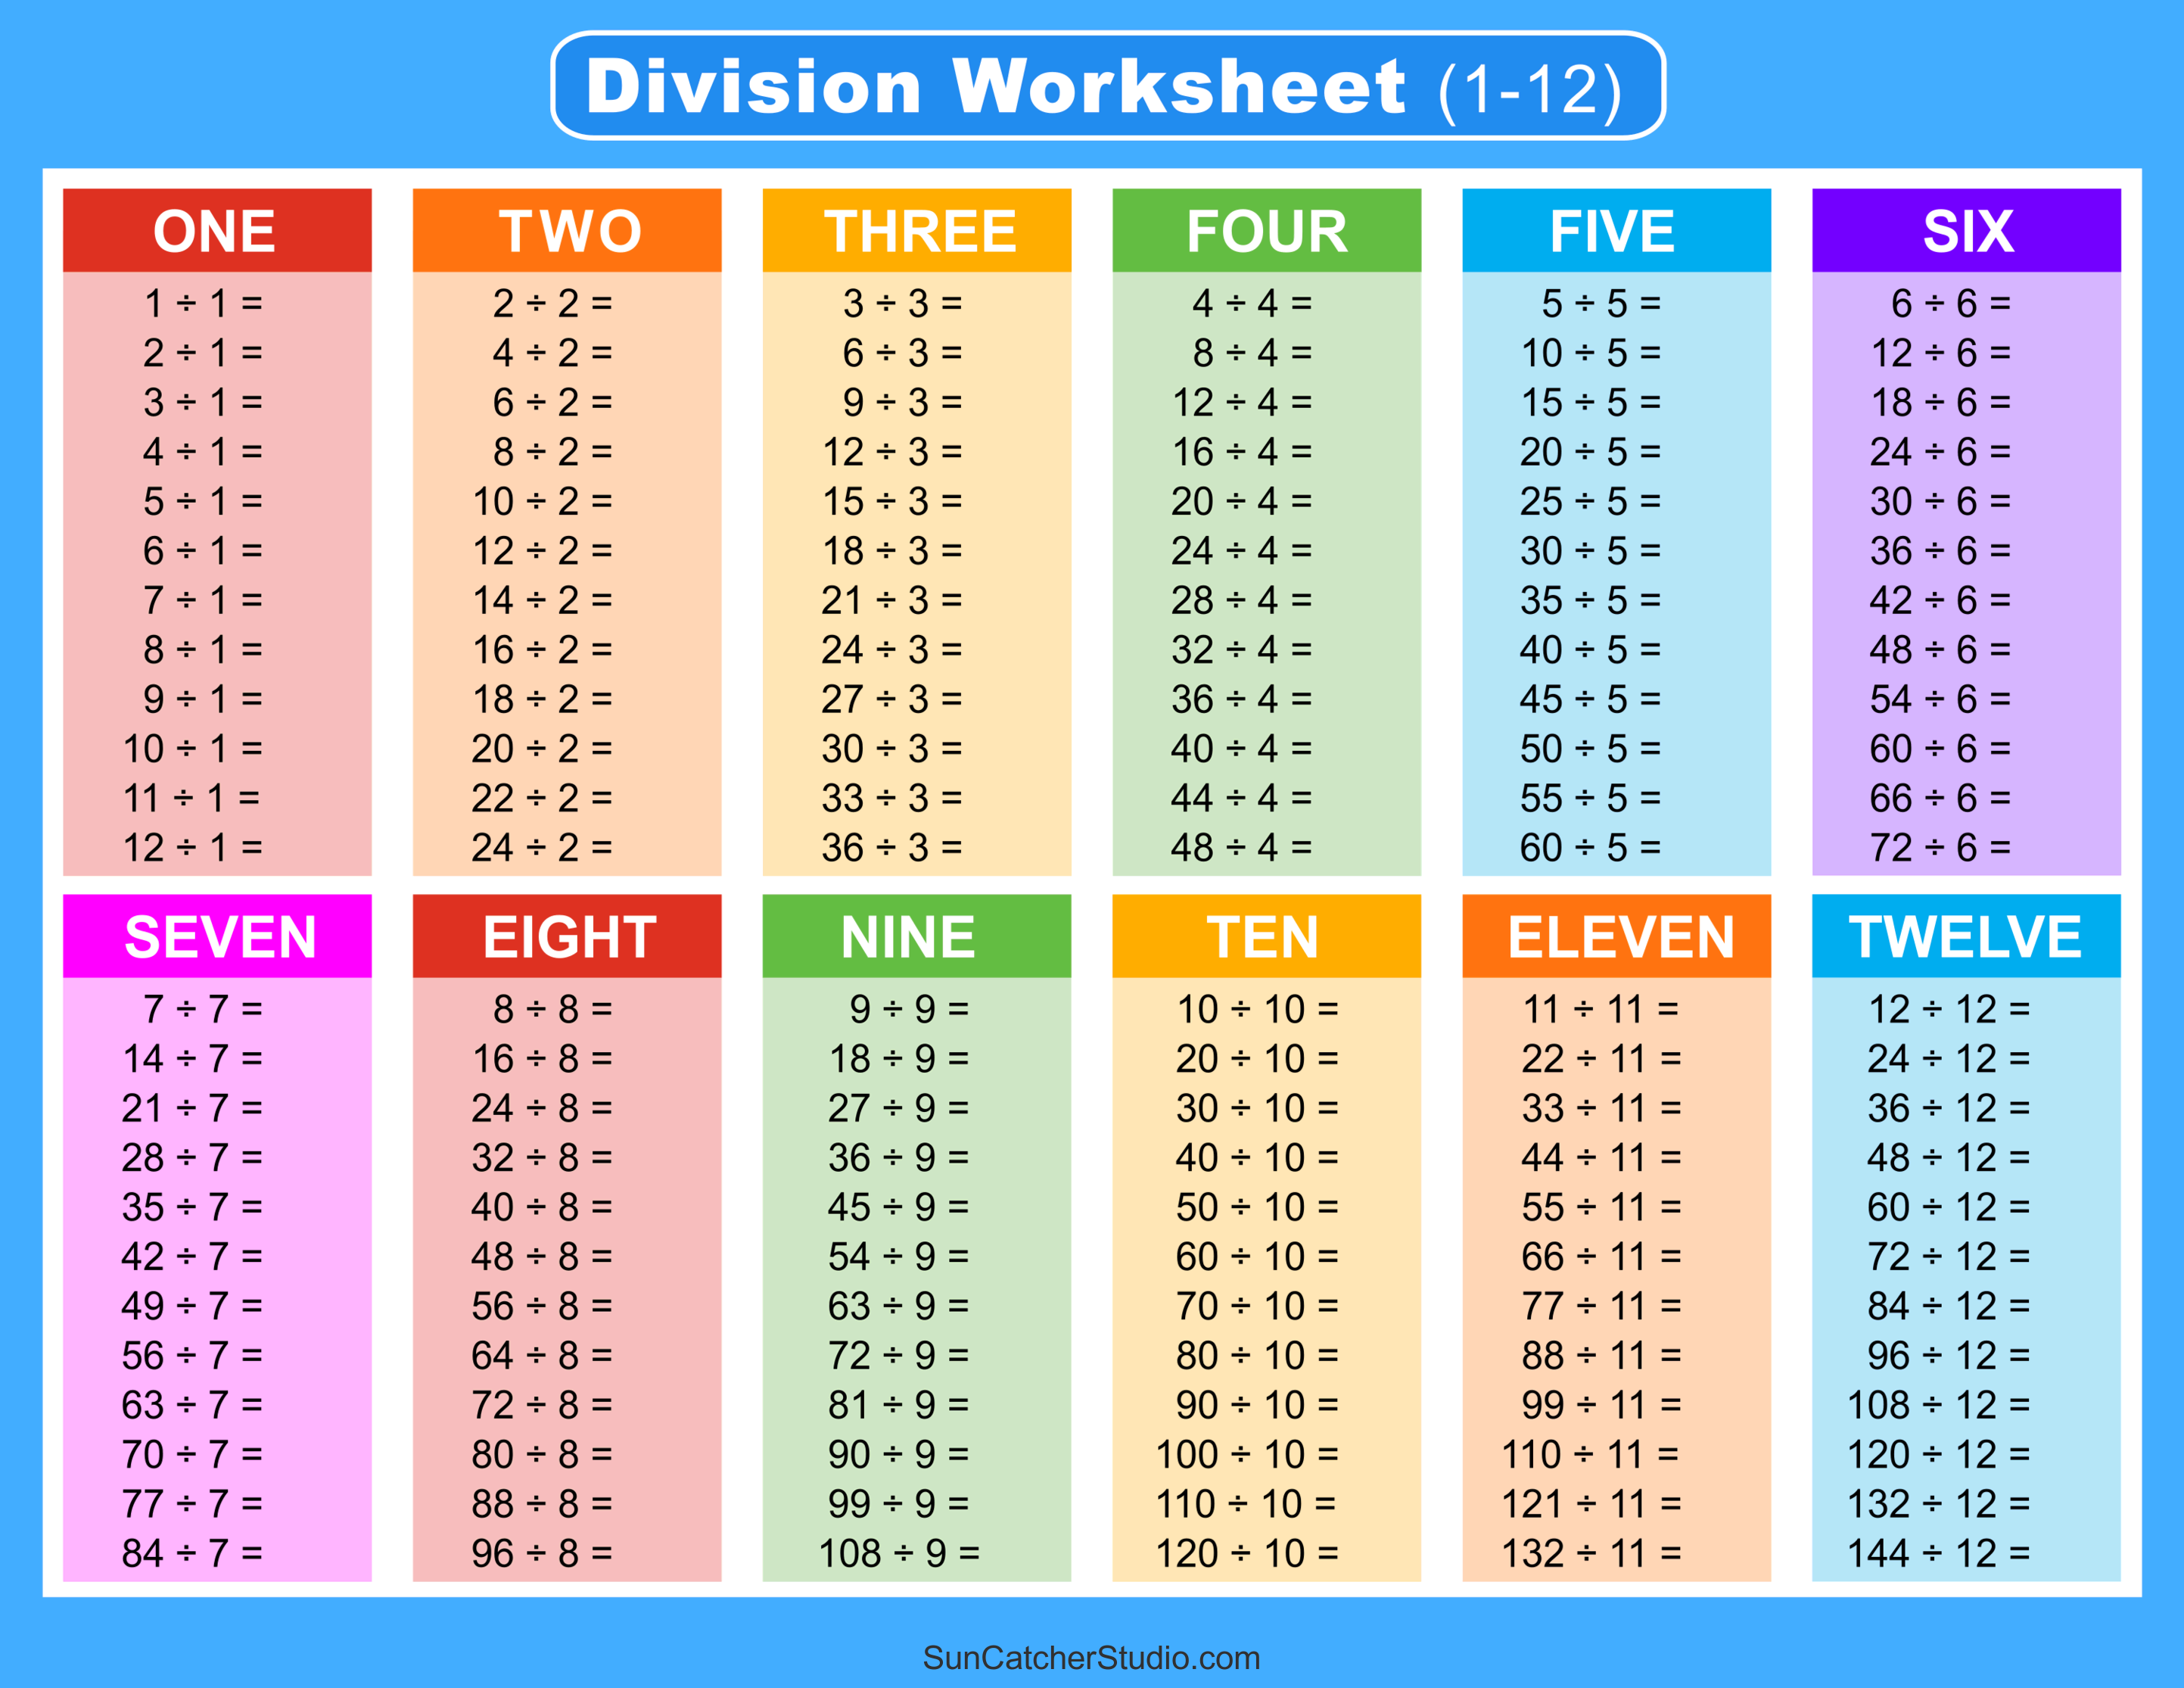 division-charts-and-tables-free-printable-pdf-math-worksheets-diy